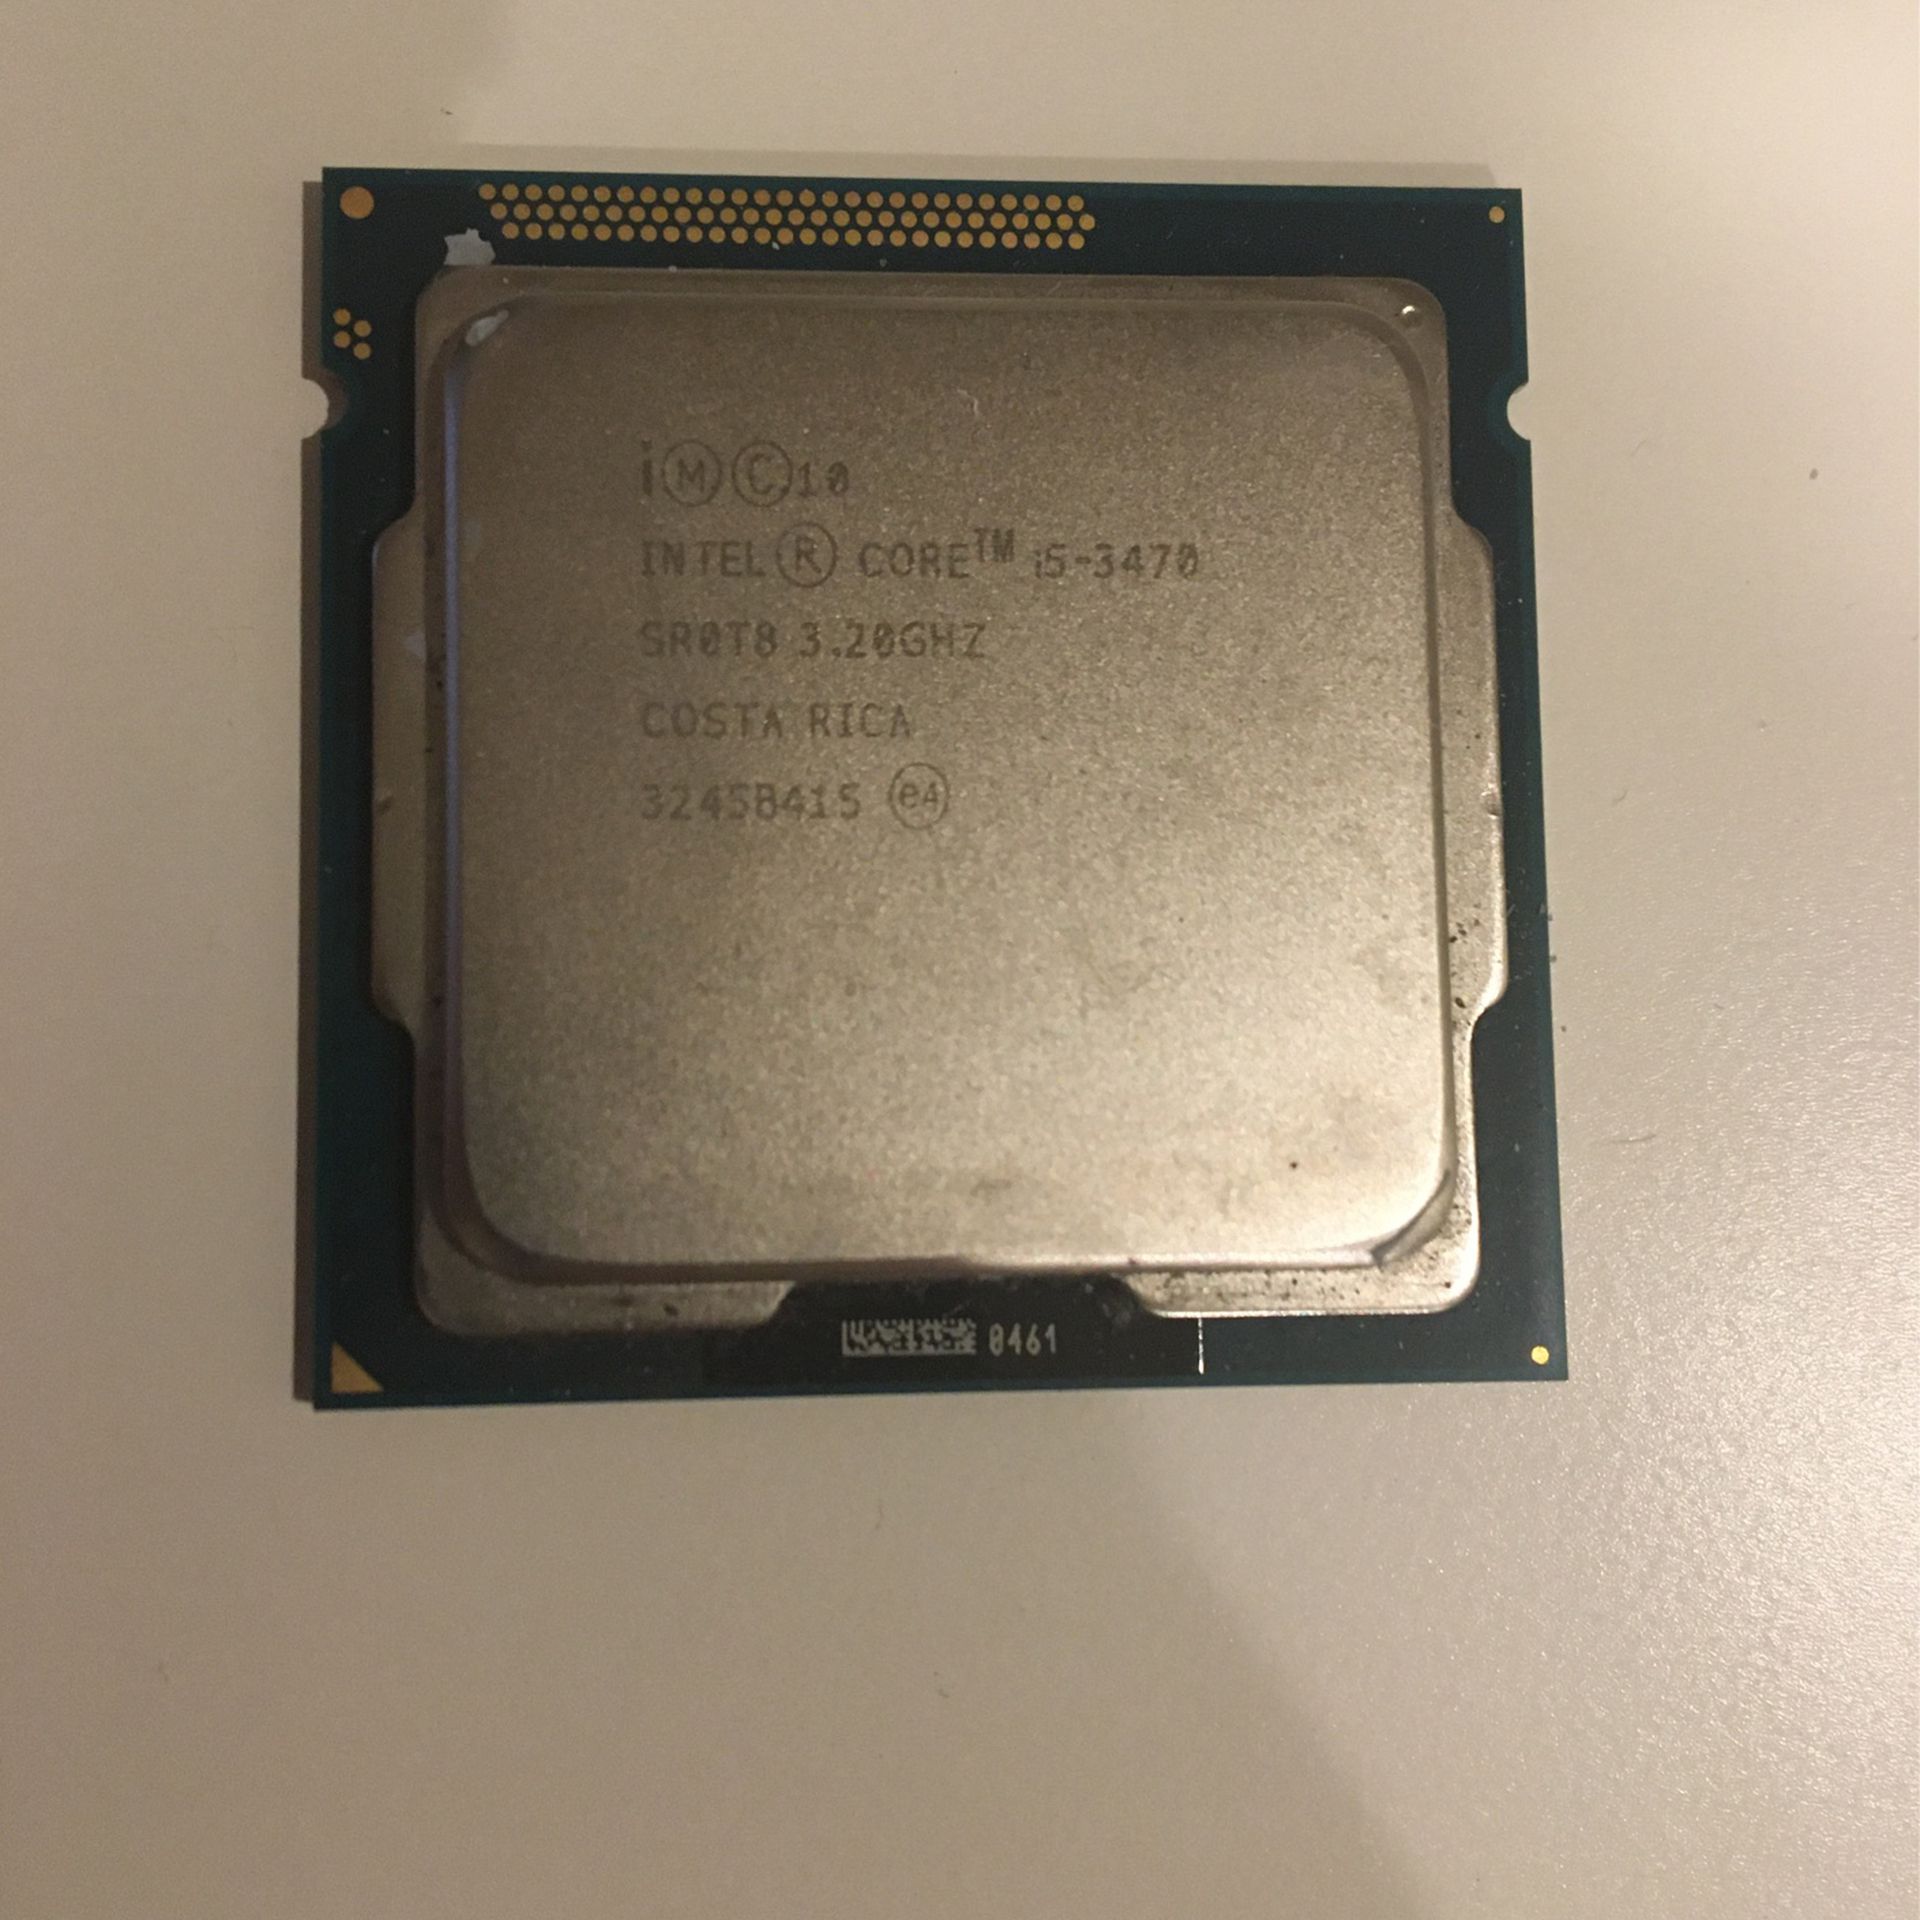 Intel i5 3470 CPU Processor